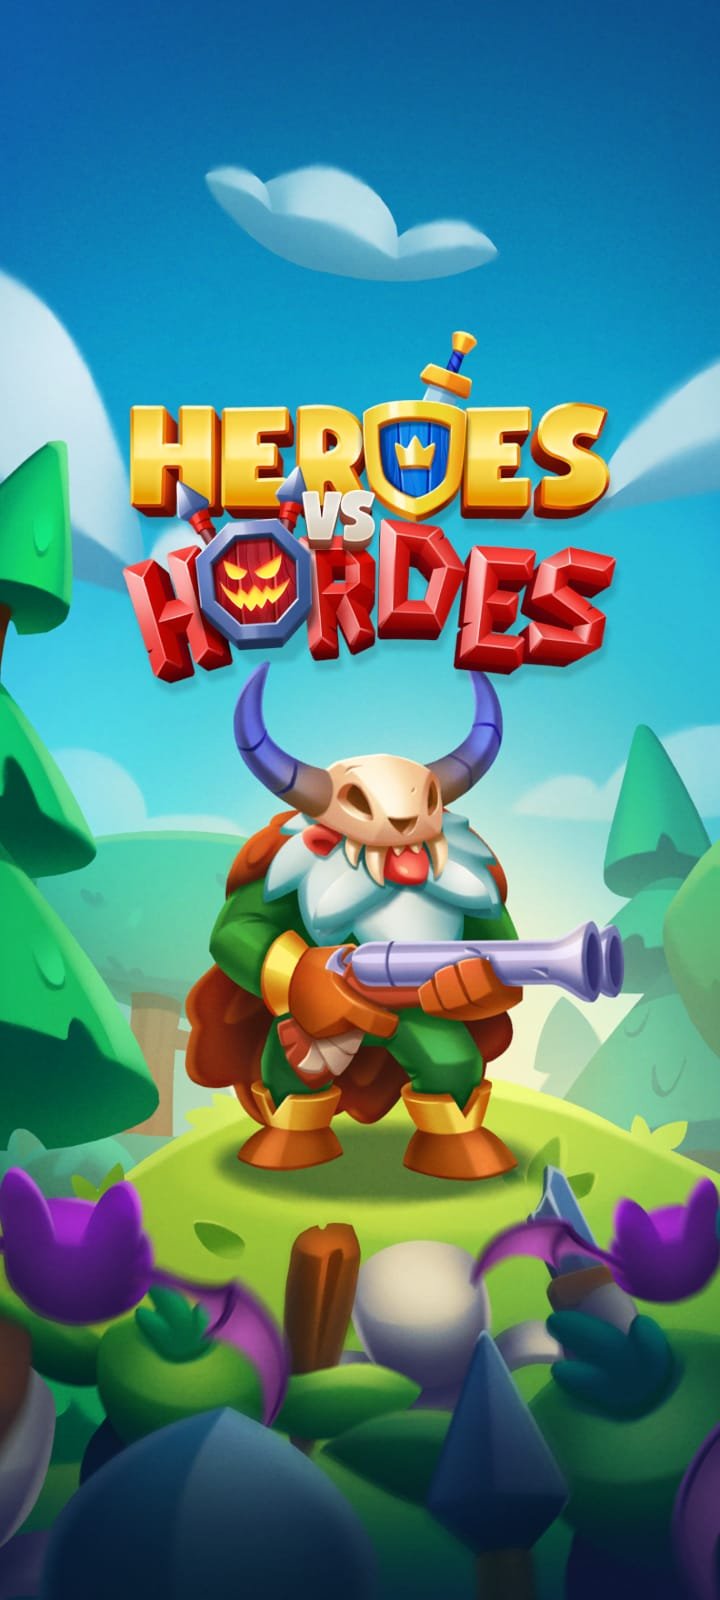 Heroes vs Hordes Review